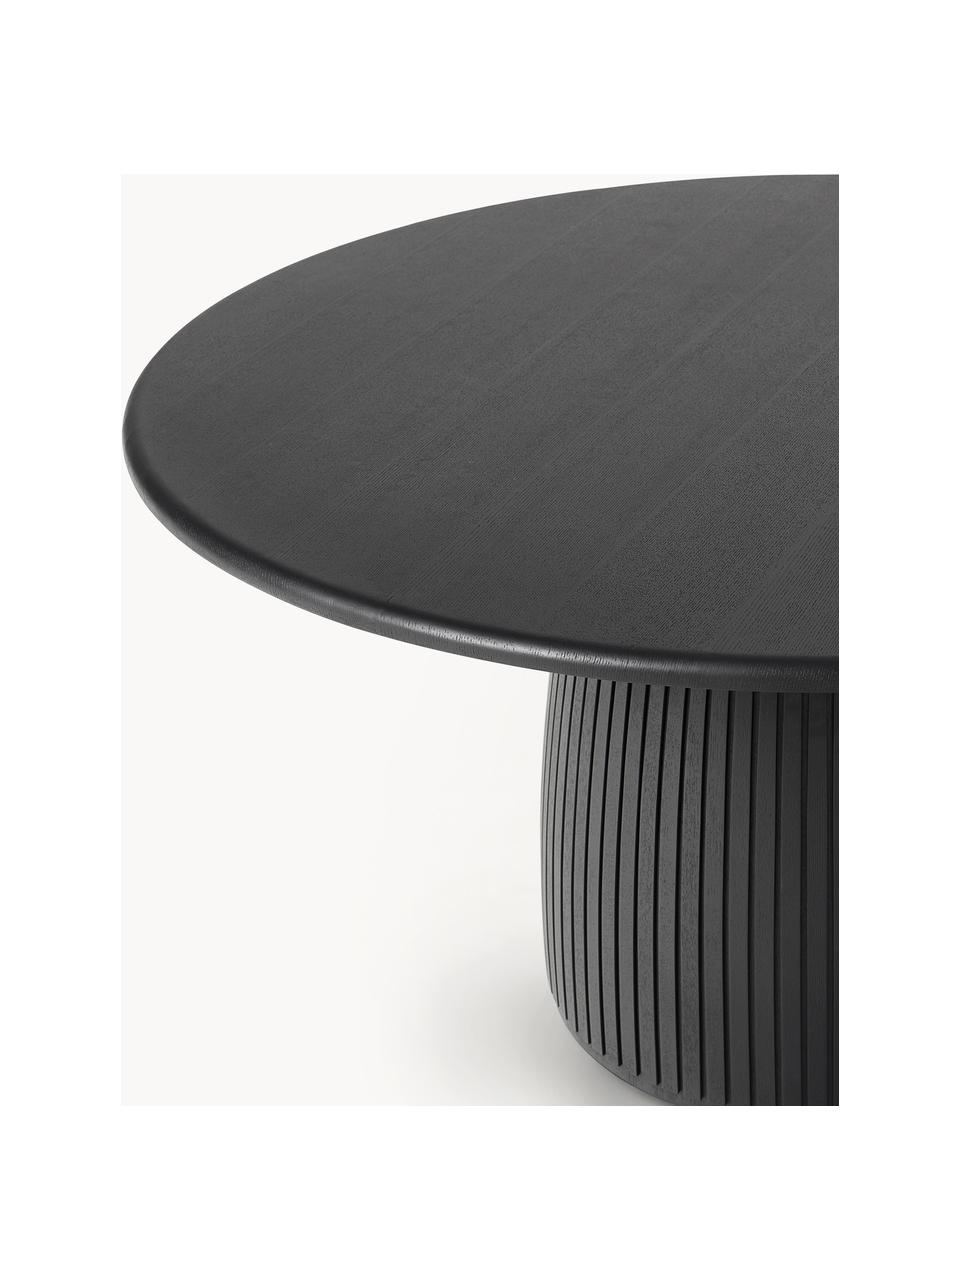 Kulatý jídelní stůl s drážkovanou strukturou Nelly, různé velikosti, Jasanová dřevěná dýha, s dřevovláknitou deskou střední hustoty (MDF)

Tento produkt je vyroben z udržitelných zdrojů dřeva s certifikací FSC®., Černá, Ø 115 cm